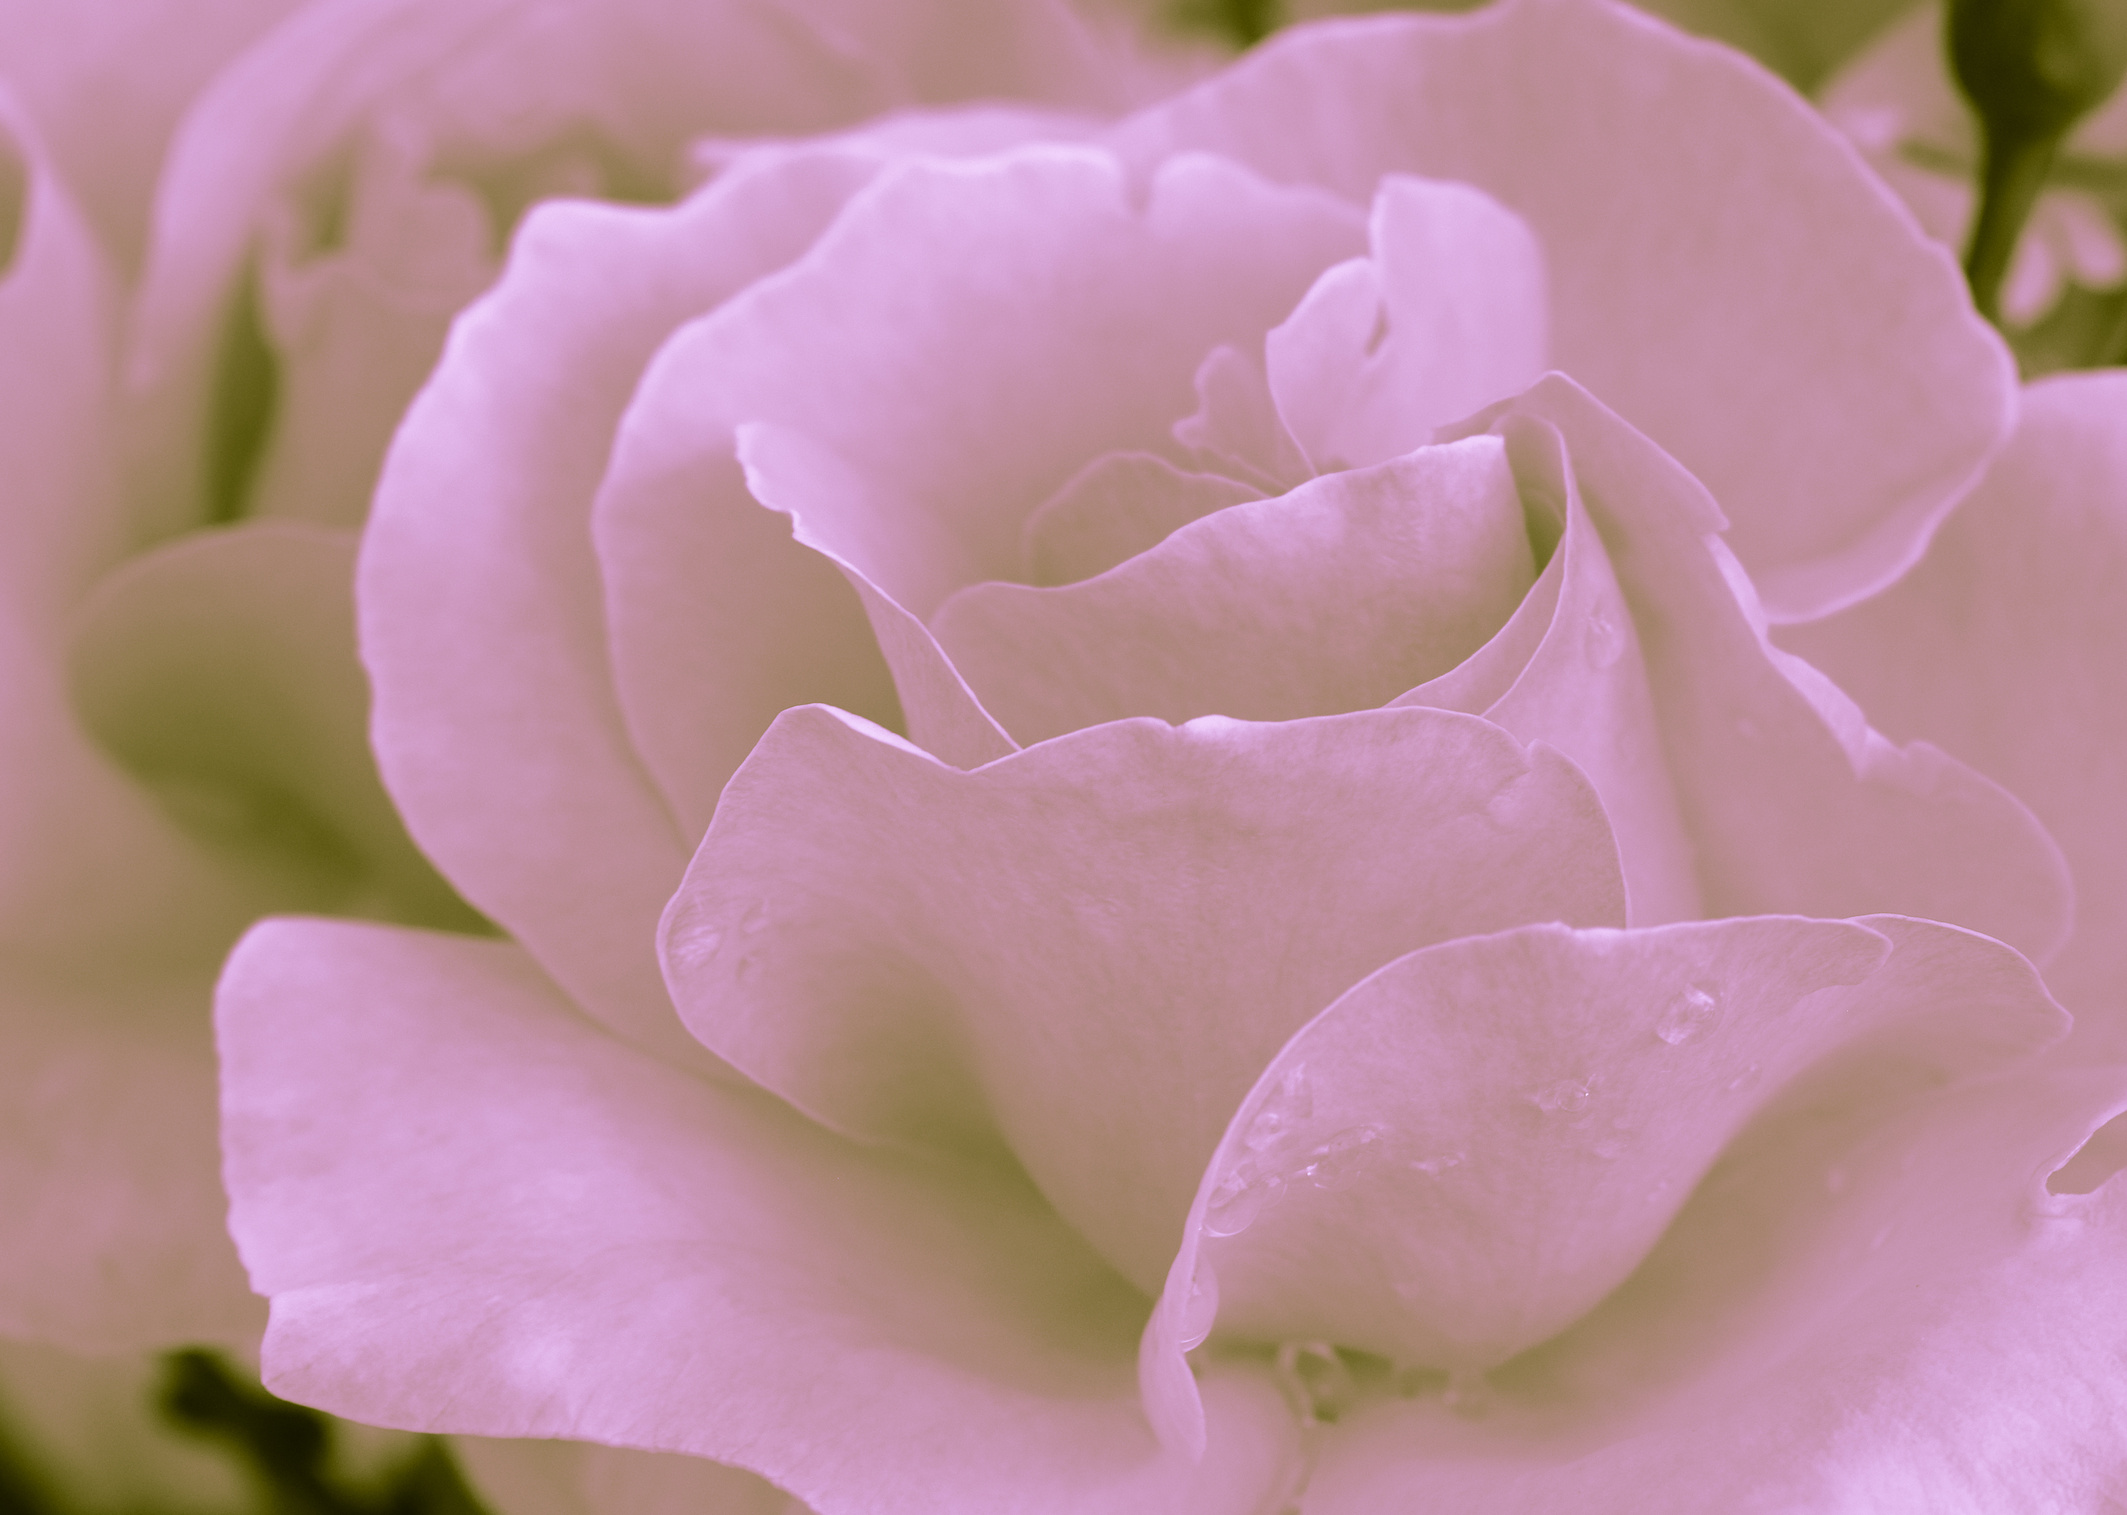 Heart of a rose. Magic petals. Violet color